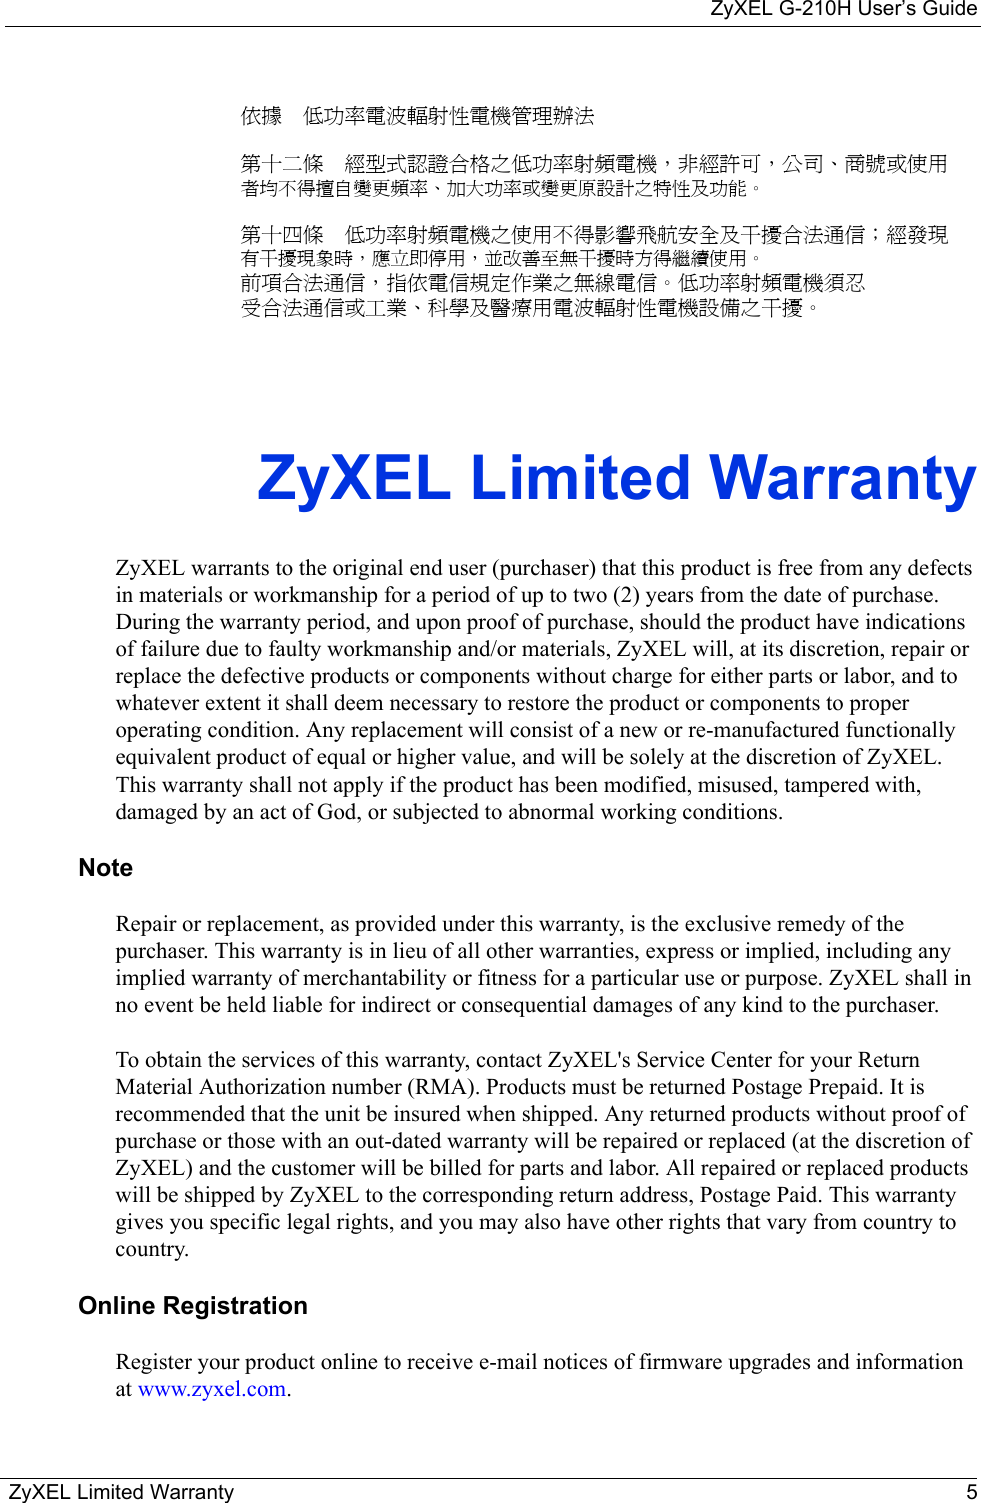 ZyXEL G-210H User’s GuideZyXEL Limited Warranty 5依據  低功率電波輻射性電機管理辦法第十二條  經型式認證合格之低功率射頻電機，非經許可，公司、商號或使用者均不得擅自變更頻率、加大功率或變更原設計之特性及功能。第十四條  低功率射頻電機之使用不得影響飛航安全及干擾合法通信；經發現有干擾現象時，應立即停用，並改善至無干擾時方得繼續使用。前項合法通信，指依電信規定作業之無線電信。低功率射頻電機須忍受合法通信或工業、科學及醫療用電波輻射性電機設備之干擾。ZyXEL Limited WarrantyZyXEL warrants to the original end user (purchaser) that this product is free from any defects in materials or workmanship for a period of up to two (2) years from the date of purchase. During the warranty period, and upon proof of purchase, should the product have indications of failure due to faulty workmanship and/or materials, ZyXEL will, at its discretion, repair or replace the defective products or components without charge for either parts or labor, and to whatever extent it shall deem necessary to restore the product or components to proper operating condition. Any replacement will consist of a new or re-manufactured functionally equivalent product of equal or higher value, and will be solely at the discretion of ZyXEL. This warranty shall not apply if the product has been modified, misused, tampered with, damaged by an act of God, or subjected to abnormal working conditions.NoteRepair or replacement, as provided under this warranty, is the exclusive remedy of the purchaser. This warranty is in lieu of all other warranties, express or implied, including any implied warranty of merchantability or fitness for a particular use or purpose. ZyXEL shall in no event be held liable for indirect or consequential damages of any kind to the purchaser.To obtain the services of this warranty, contact ZyXEL&apos;s Service Center for your Return Material Authorization number (RMA). Products must be returned Postage Prepaid. It is recommended that the unit be insured when shipped. Any returned products without proof of purchase or those with an out-dated warranty will be repaired or replaced (at the discretion of ZyXEL) and the customer will be billed for parts and labor. All repaired or replaced products will be shipped by ZyXEL to the corresponding return address, Postage Paid. This warranty gives you specific legal rights, and you may also have other rights that vary from country to country.Online RegistrationRegister your product online to receive e-mail notices of firmware upgrades and information at www.zyxel.com.